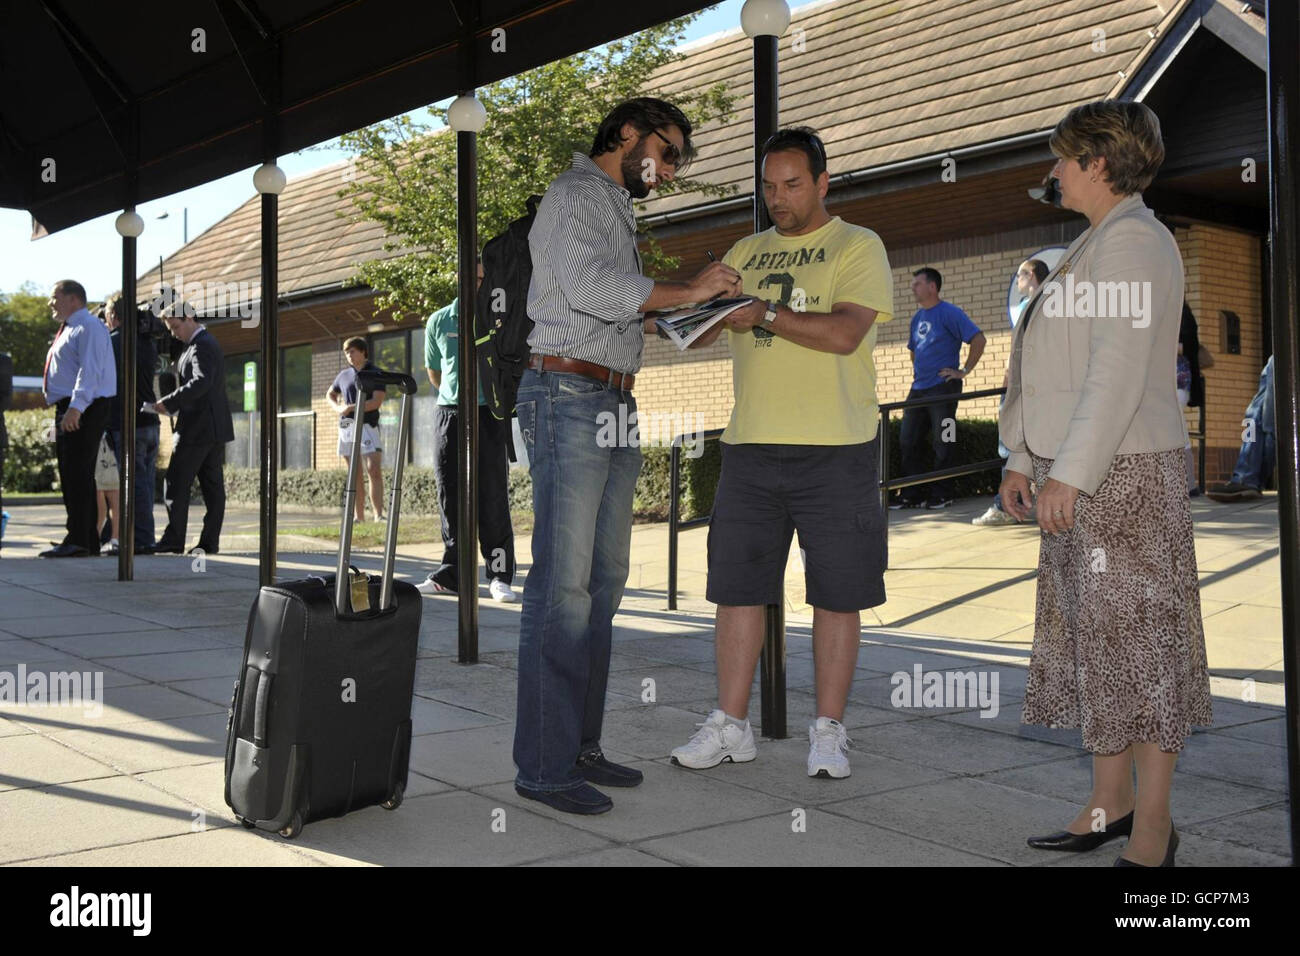 Le Shahid Afridi pakistanais s'arrête pour signer un autographe pour un fan lorsqu'il arrive à l'hôtel Team de Taunton. Banque D'Images